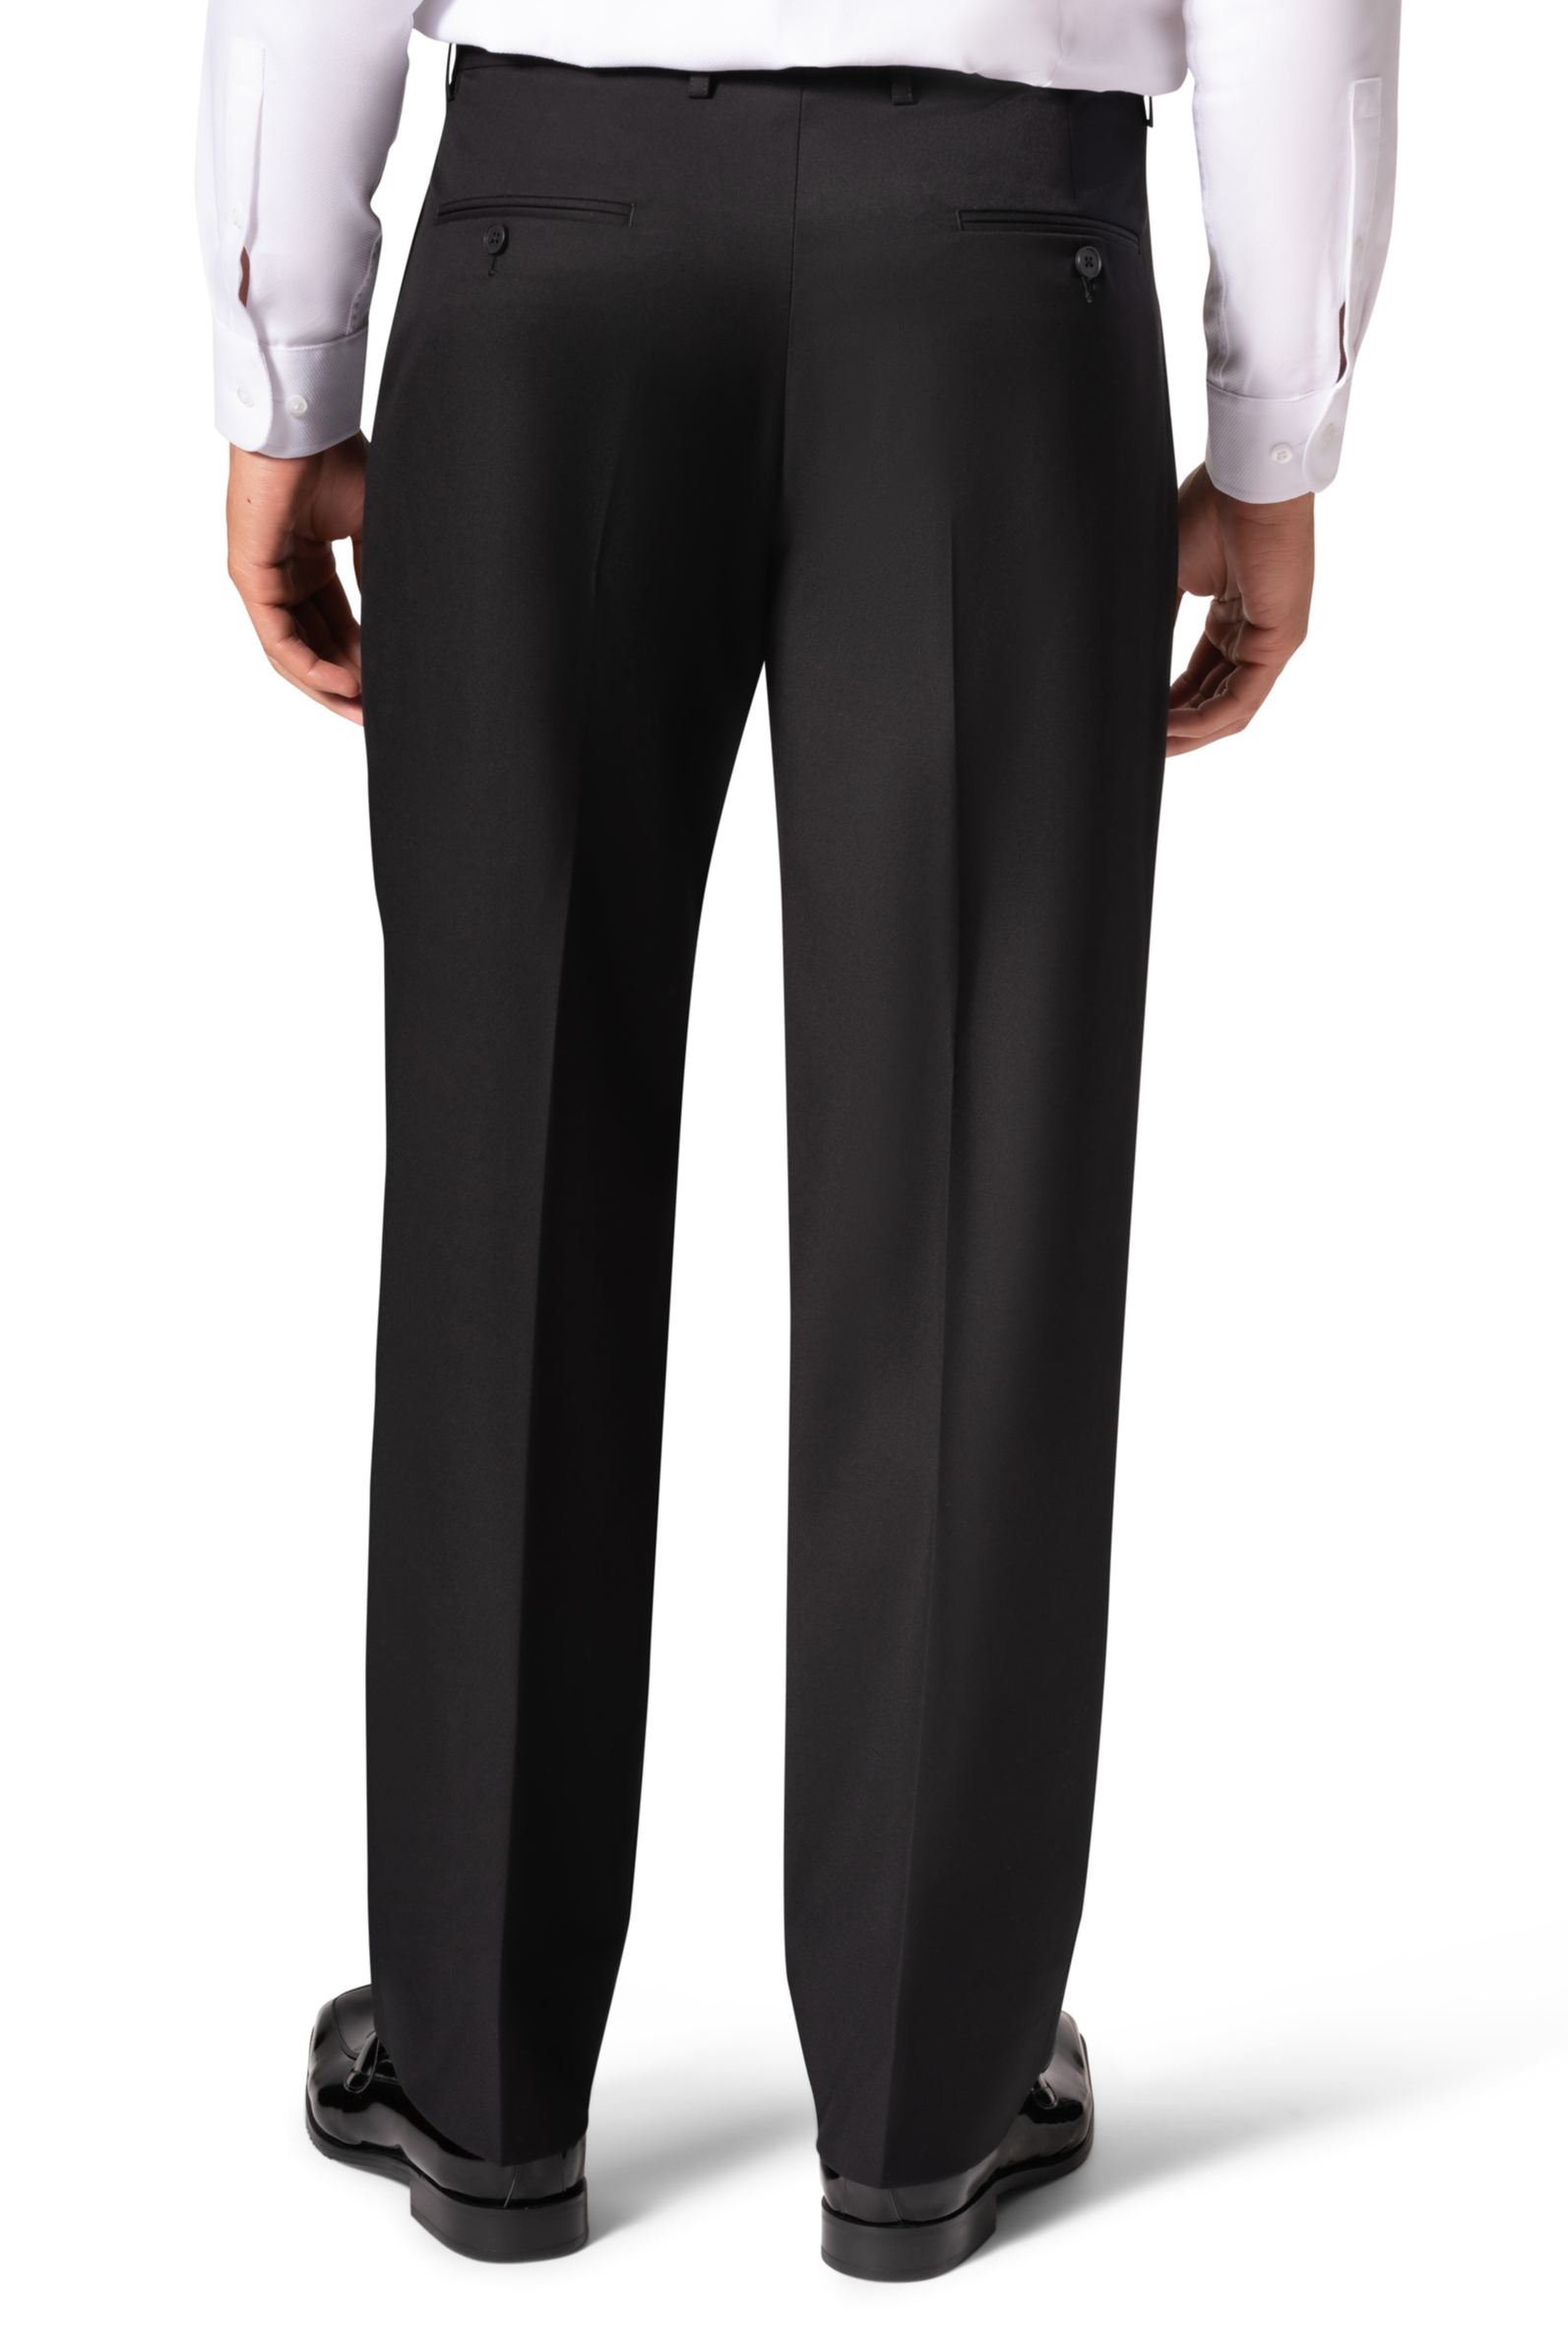 Berragamo A6732 D/B Modern Fit Suit - Black